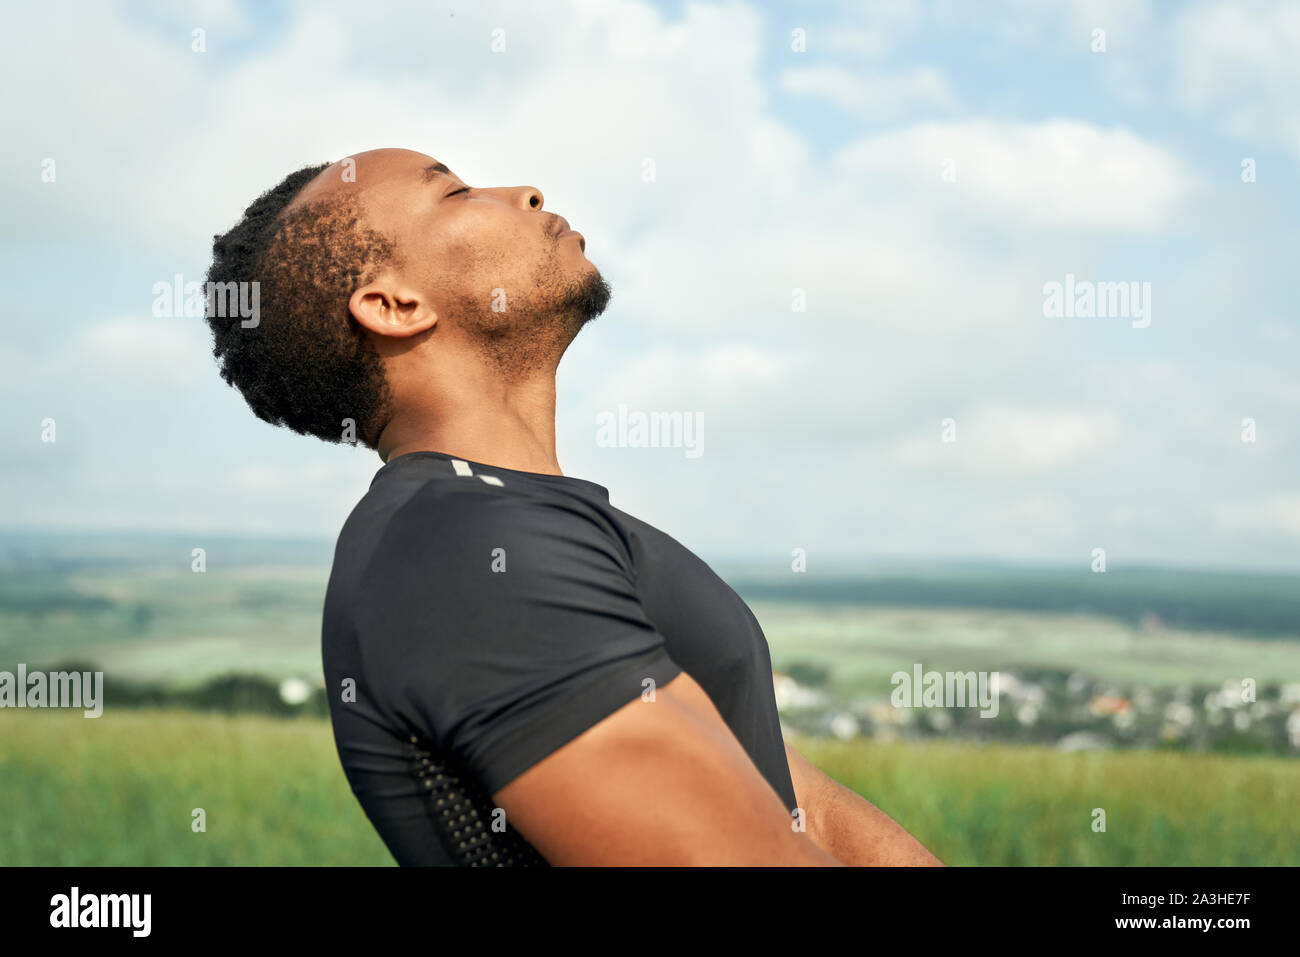 Cerca de guapo, deportivo hombre africano formación y meditar. Deportista vestían de negro camiseta hacer yoga. Atleta muscular posando al aire libre con los ojos cerrados. Foto de stock